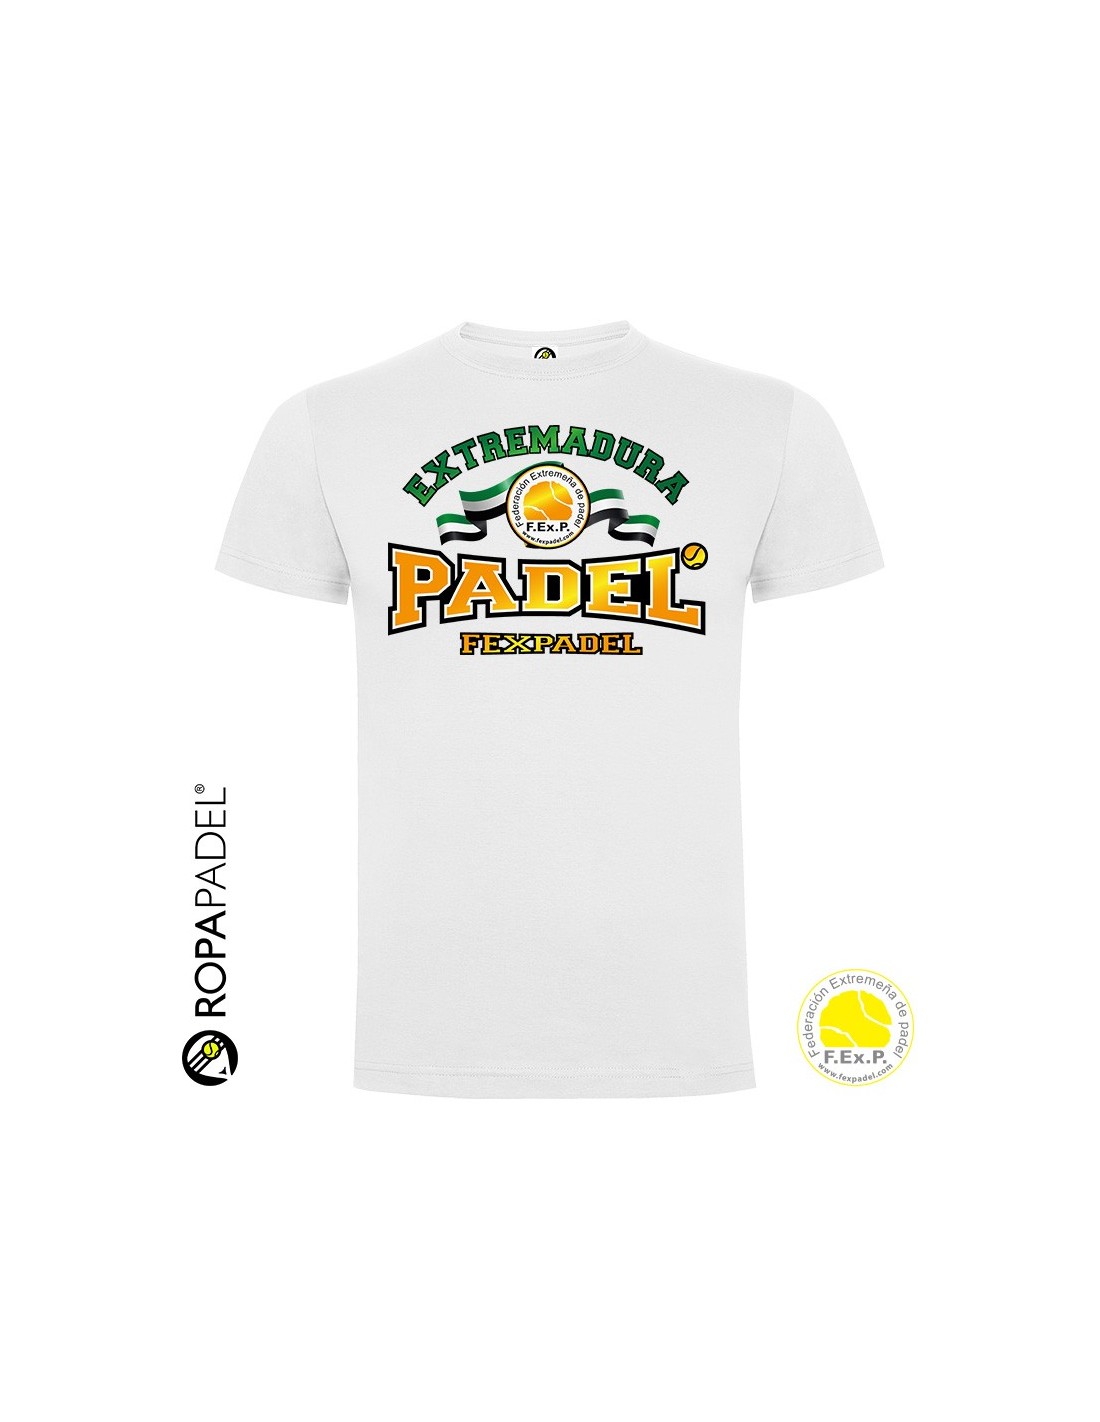 Camiseta de Pádel hombre FEXPADEL SELECCION 2019 Federación Extremeña de  Pádel